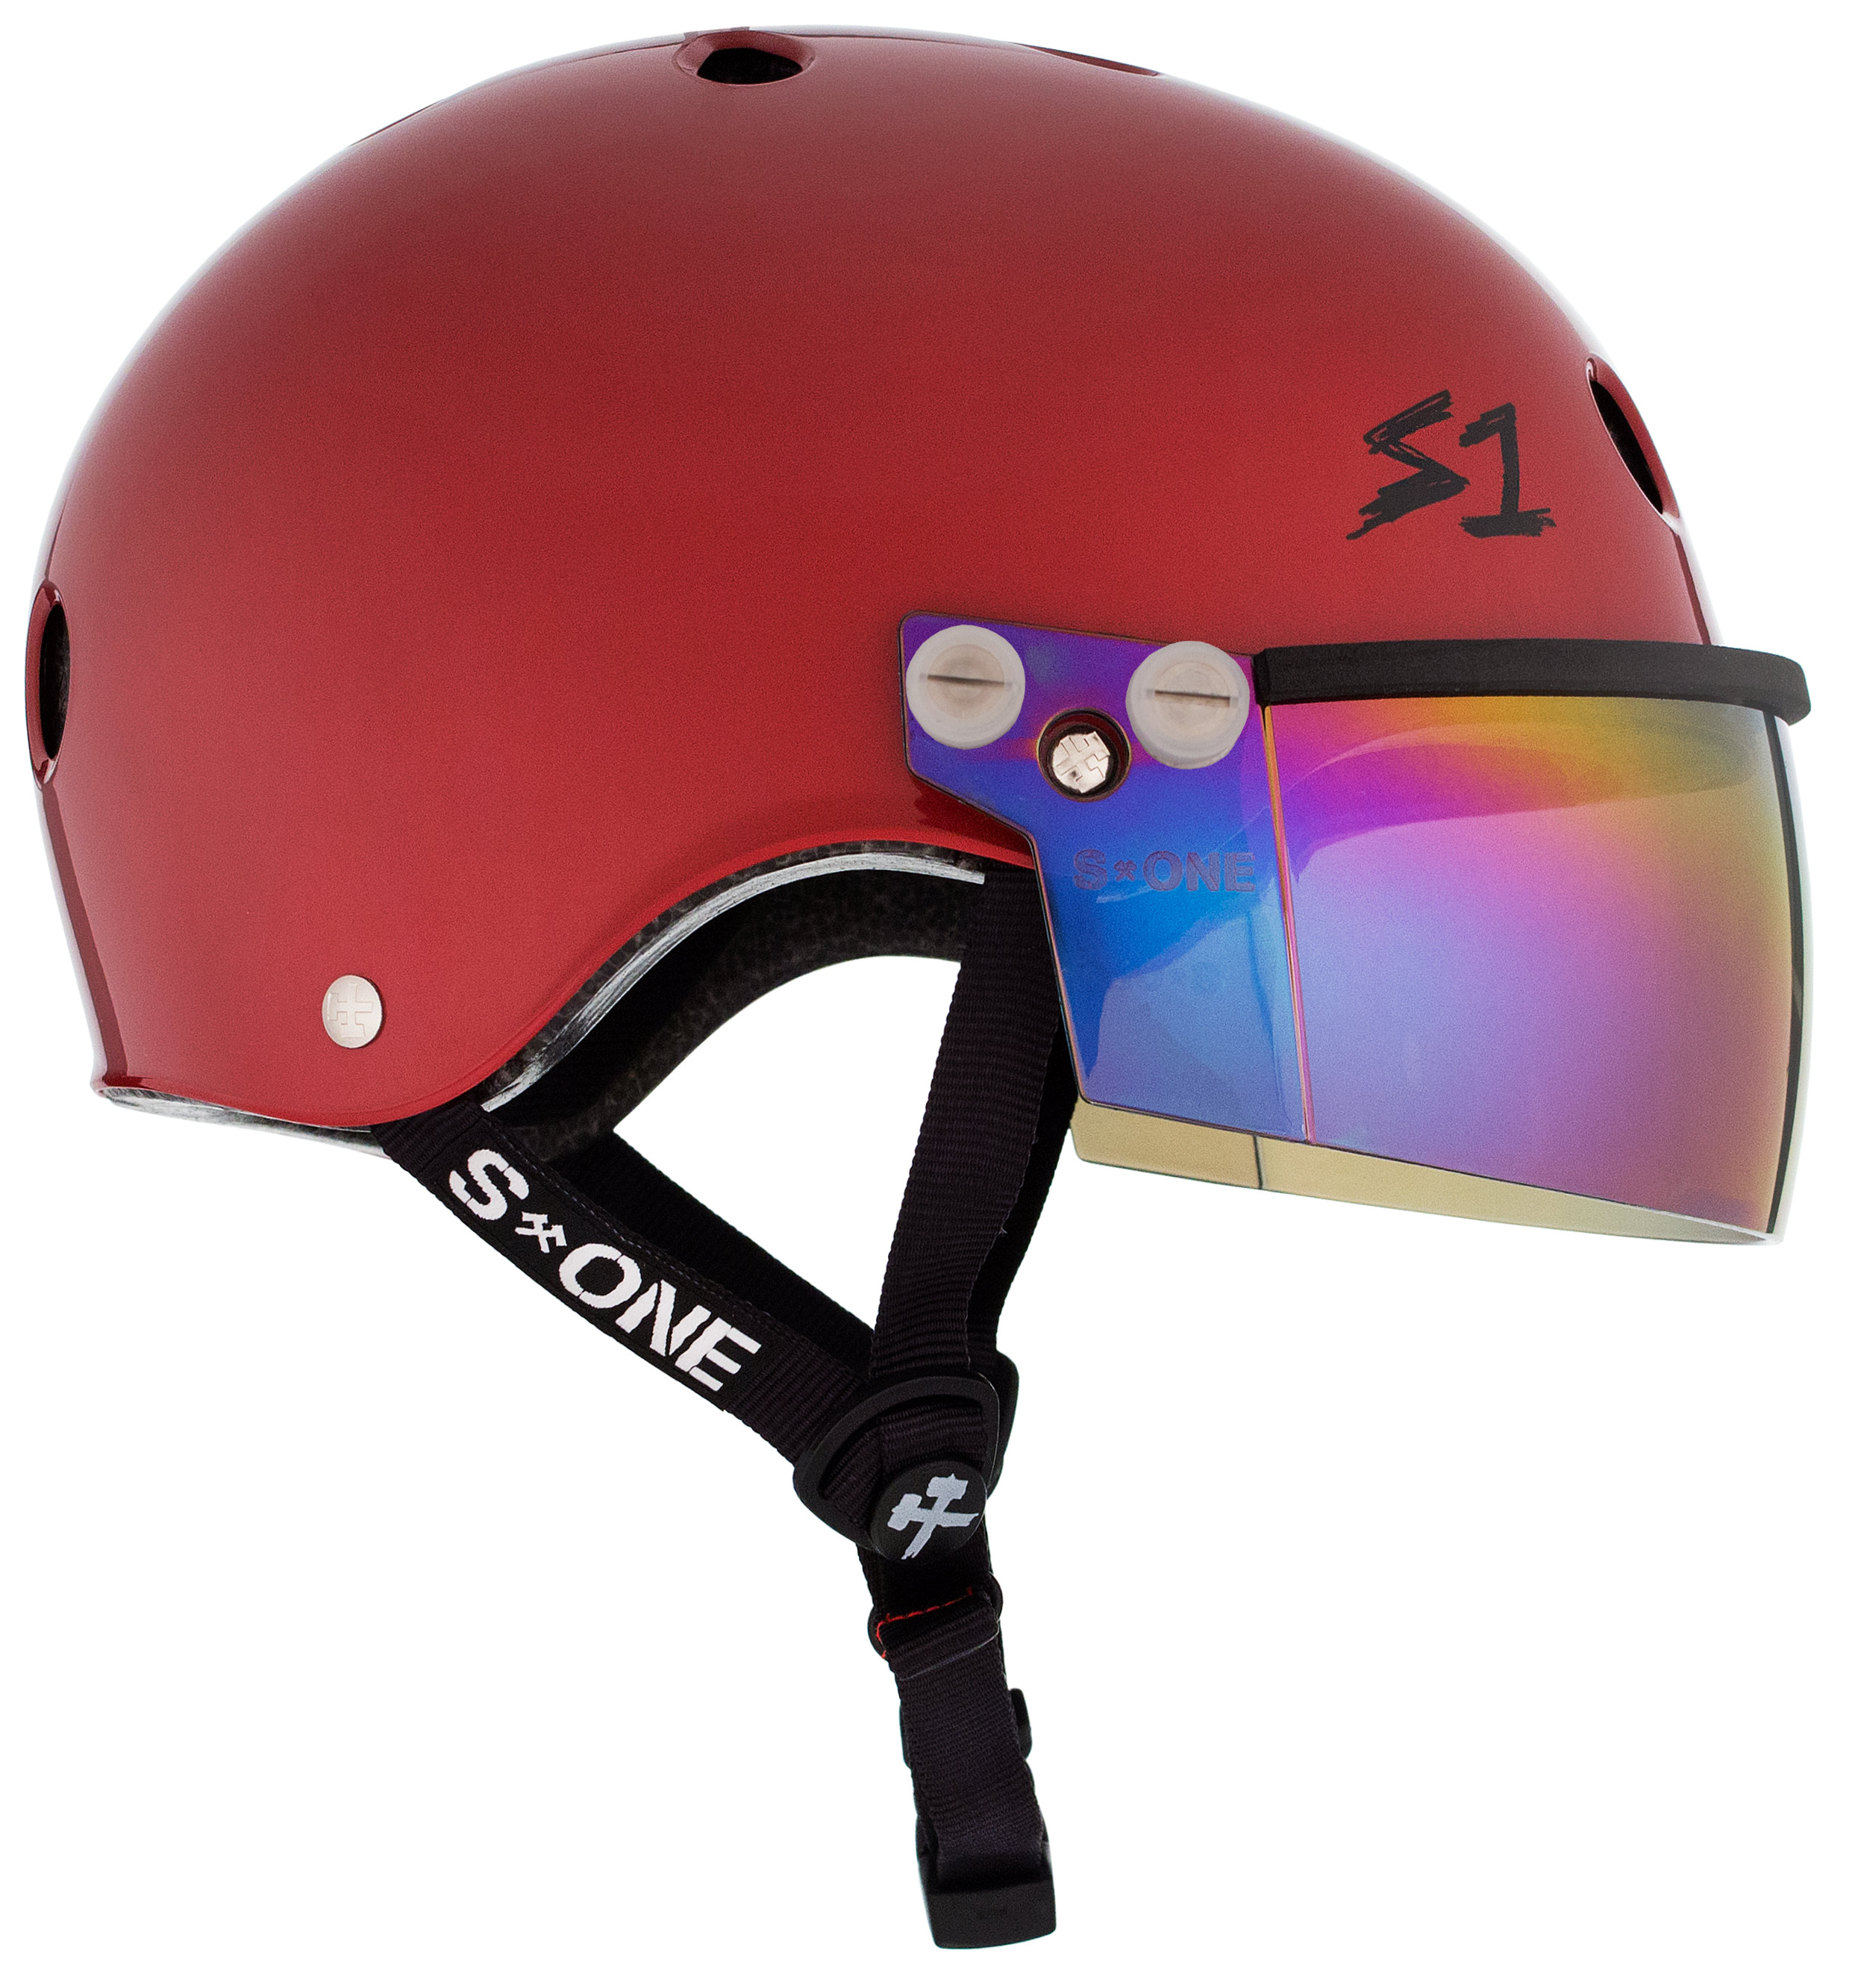 S1 Lifer Visor Helmet Scarlet Red Gloss w/ Iridium Visor - S1 Helmets ...